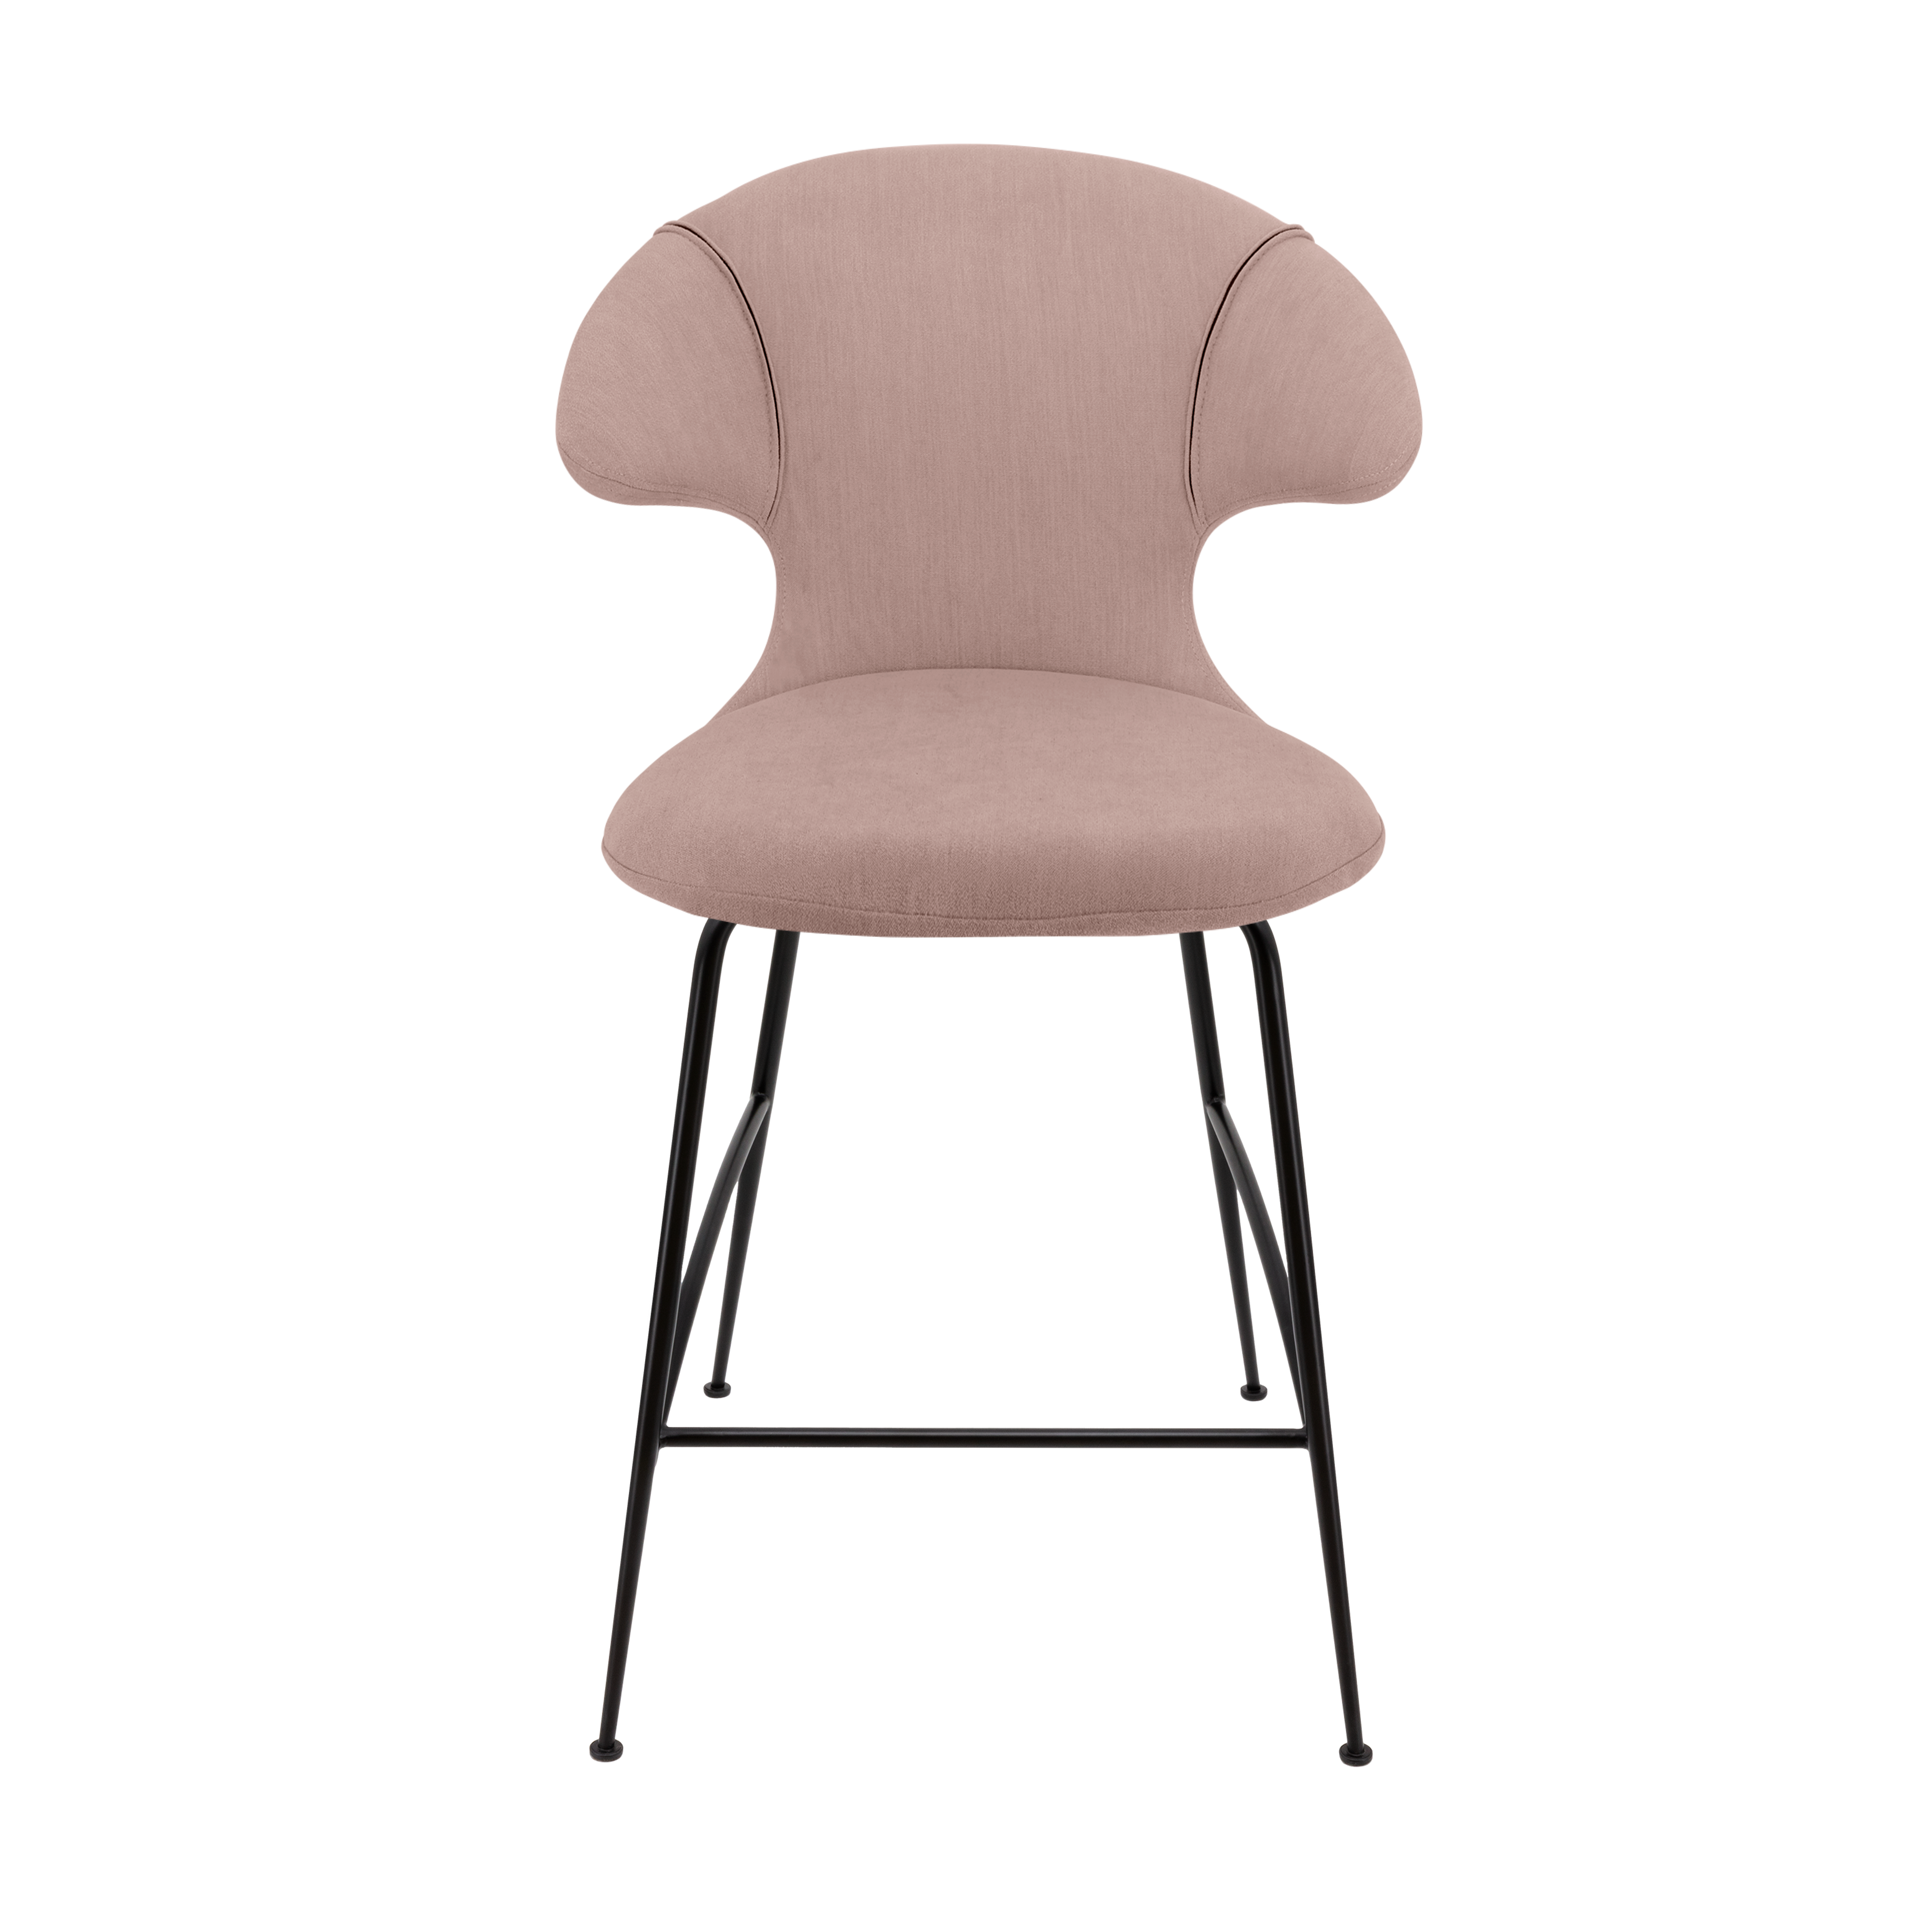 Time Flies Counter Stuhl in Stone Rose präsentiert im Onlineshop von KAQTU Design AG. Barstuhl mit Armlehne ist von Umage